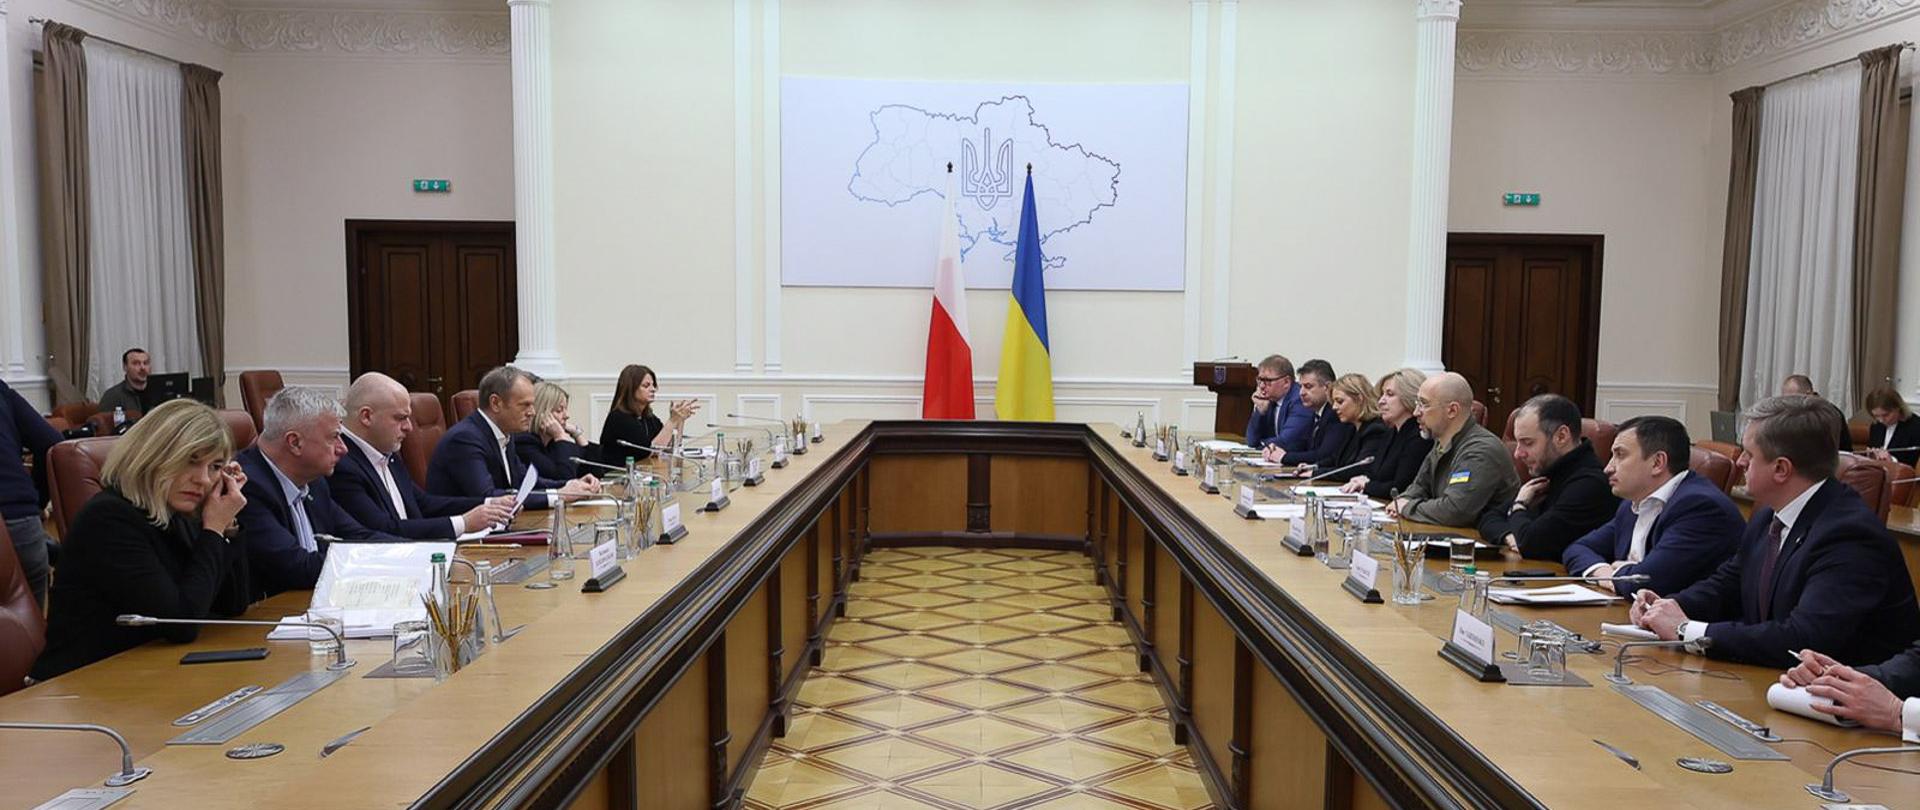 Premier Donald Tusk podczas spotkania z premierem Ukrainy Denysem Shmyhalem podczas międzyrządowych konsultacji w Kijowie.